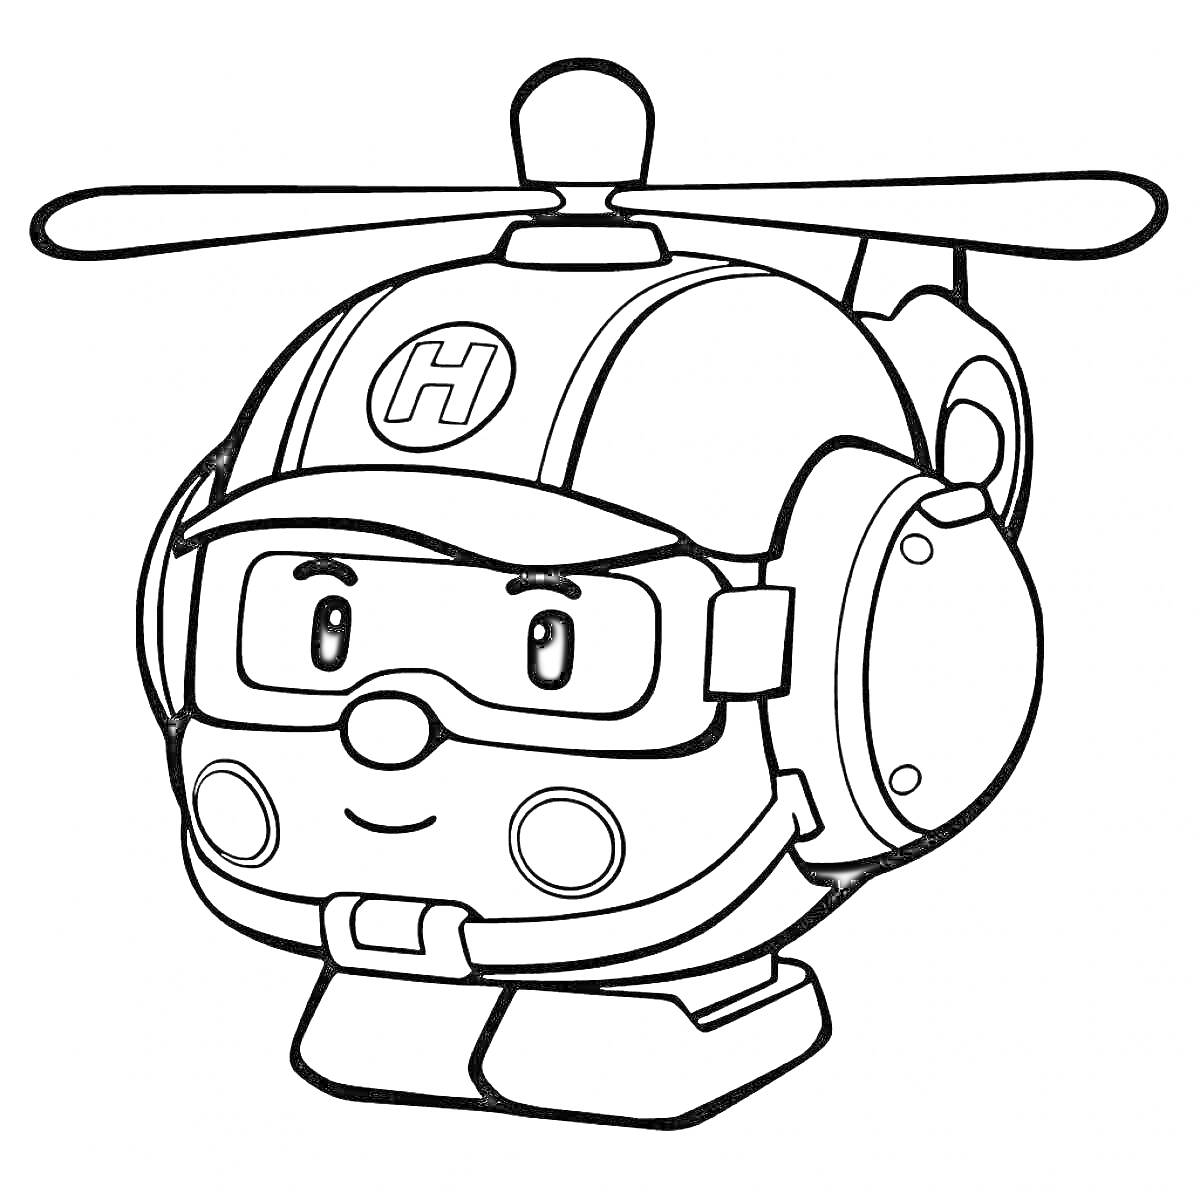 Раскраска Робокар Поли - вертолёт Хэлли крупным планом